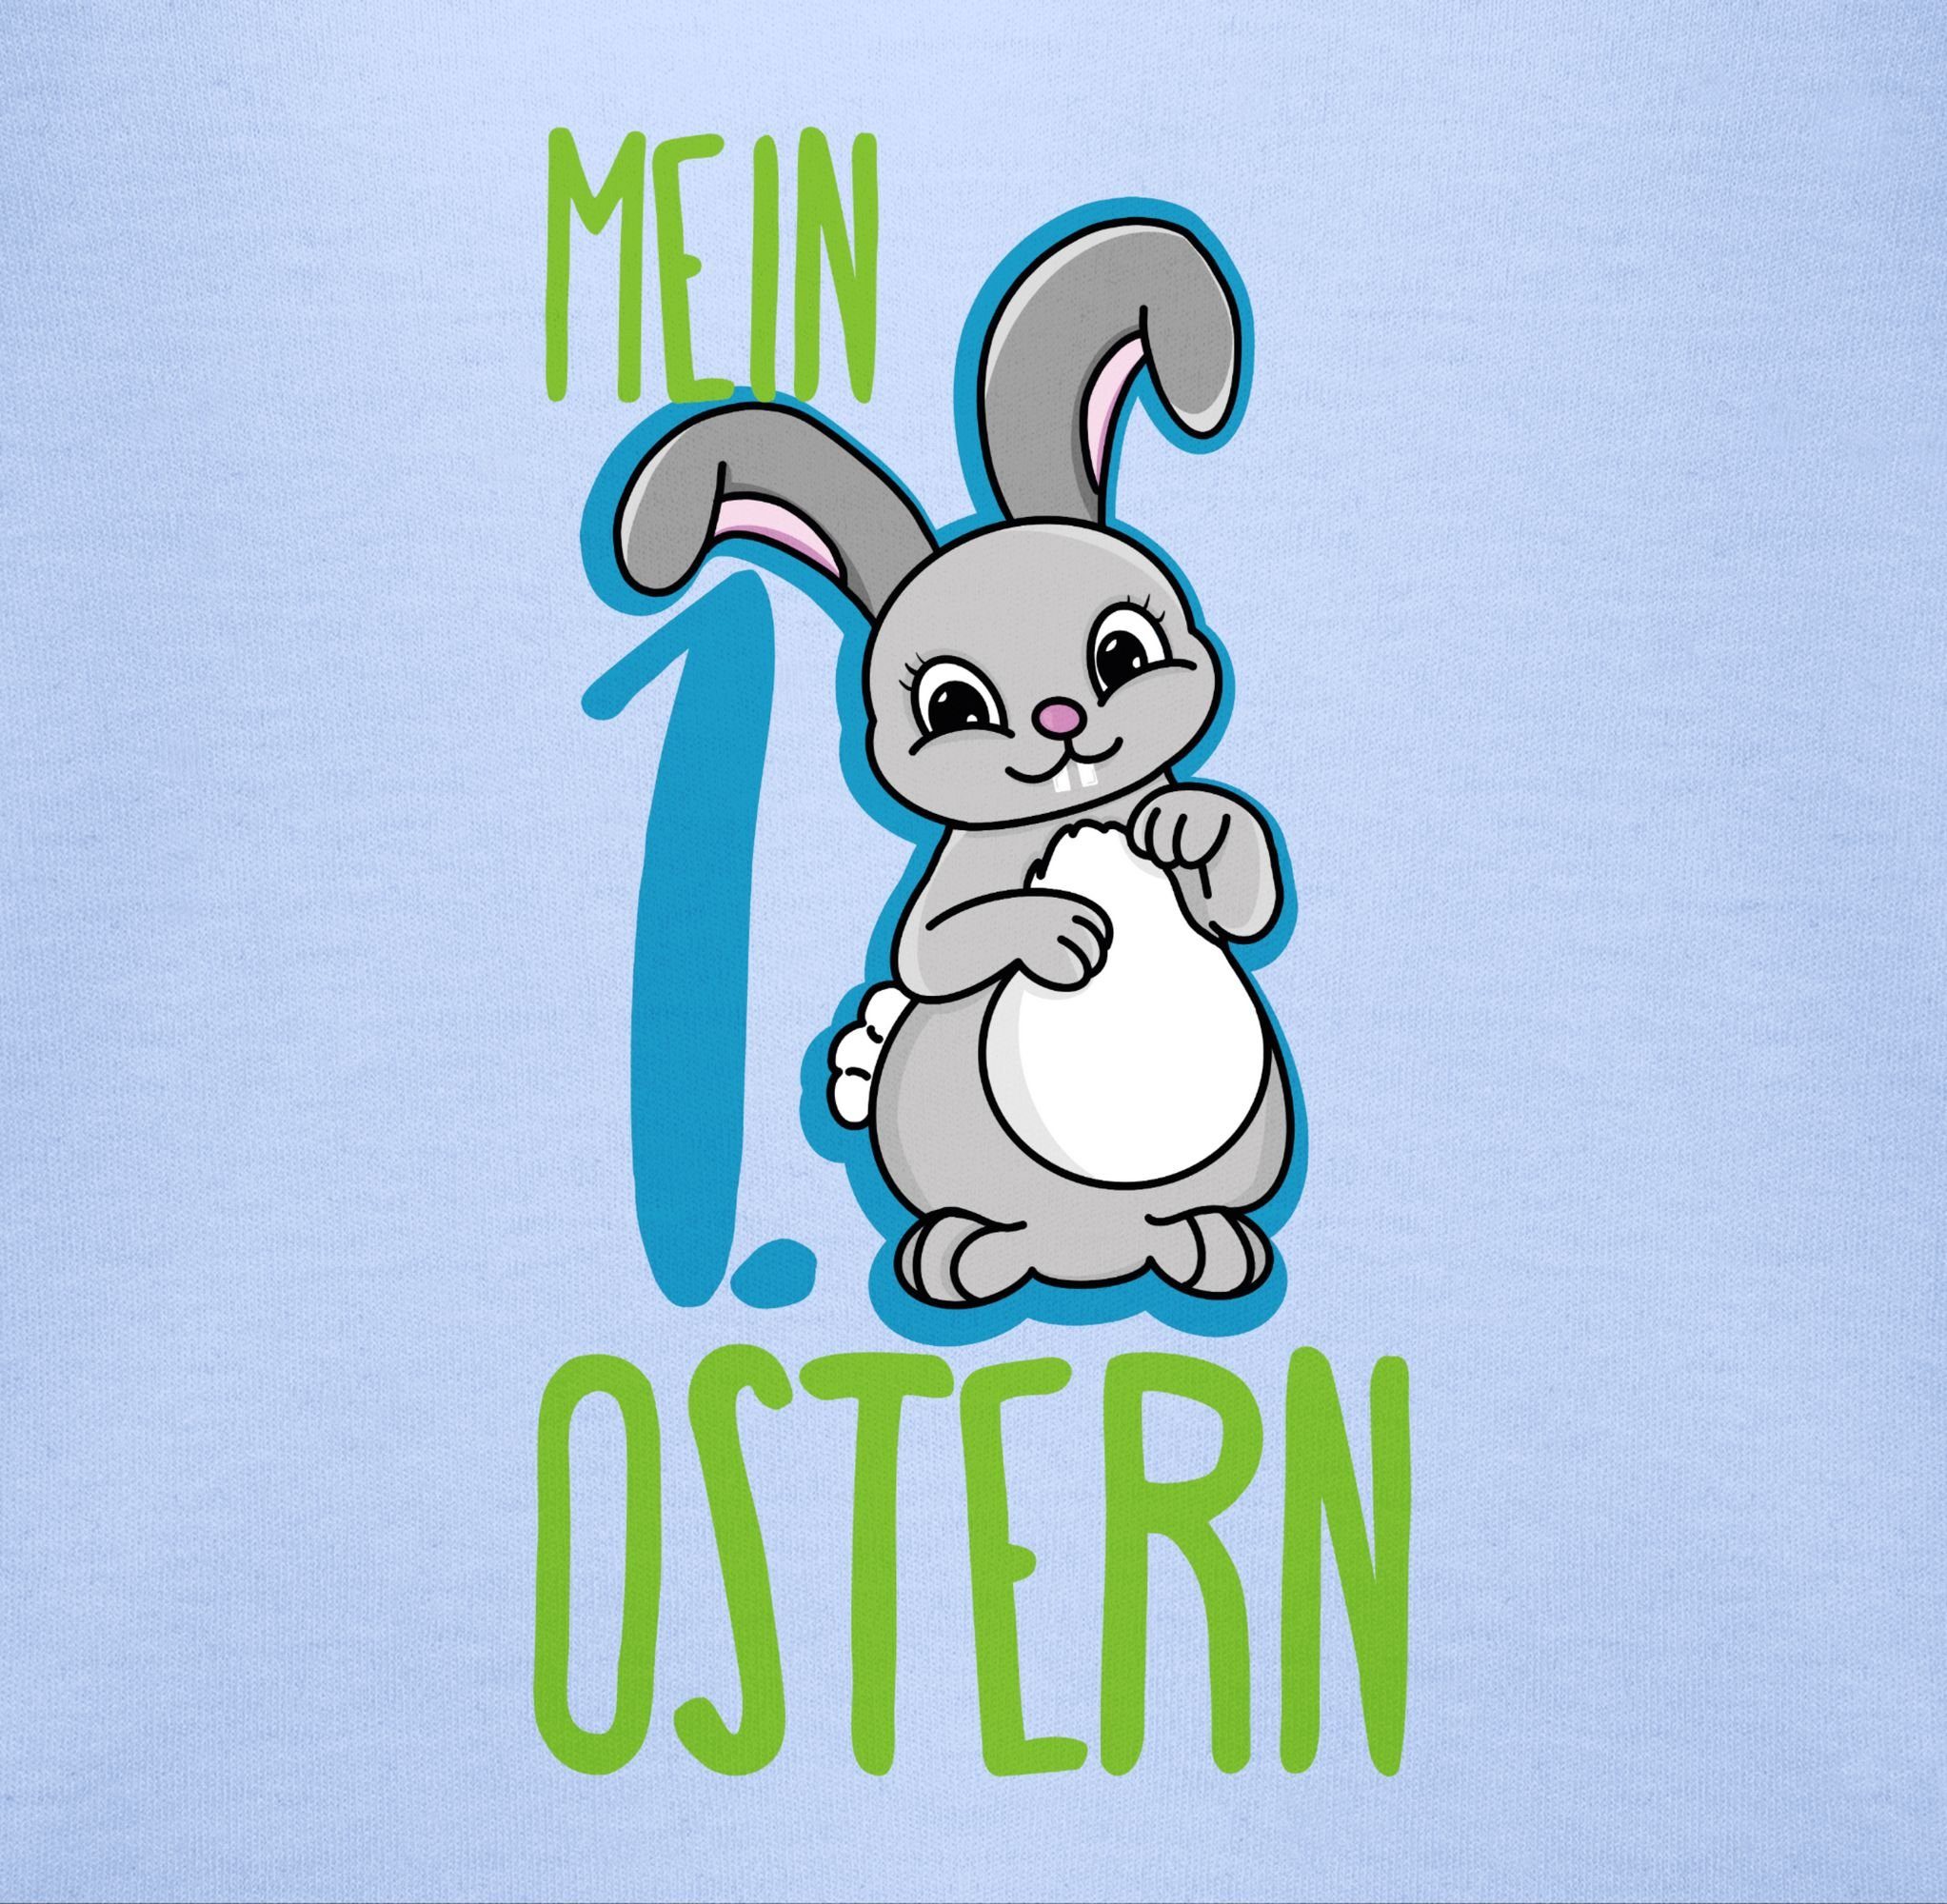 1. Ostern T-Shirt 1 Babyblau Ostergeschenke Shirtracer Hase blau Mein